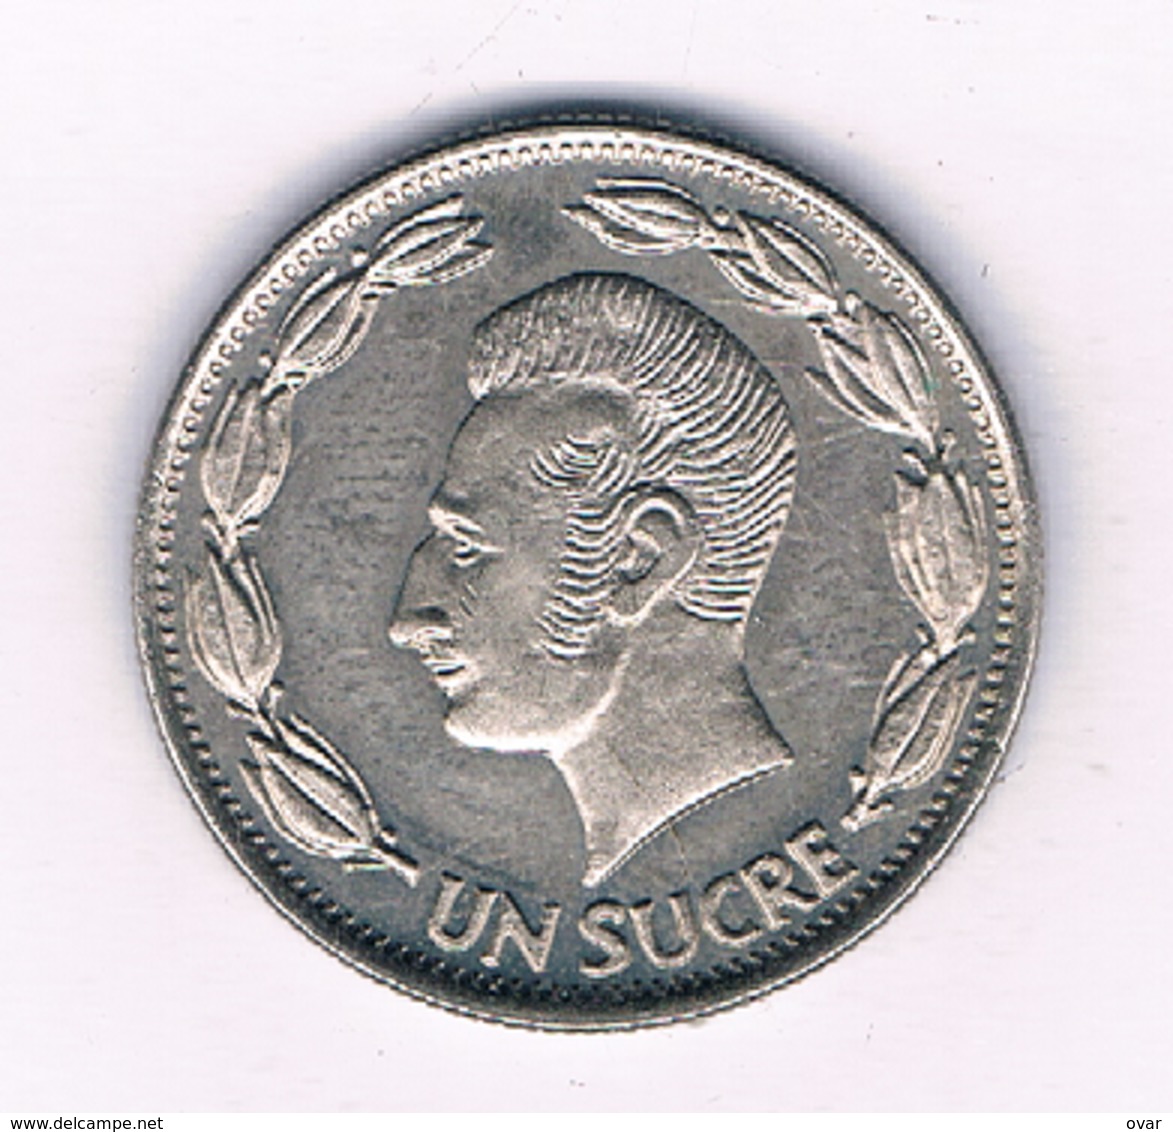 UN SUCRE 1970 ECUADOR /4992/ - Ecuador